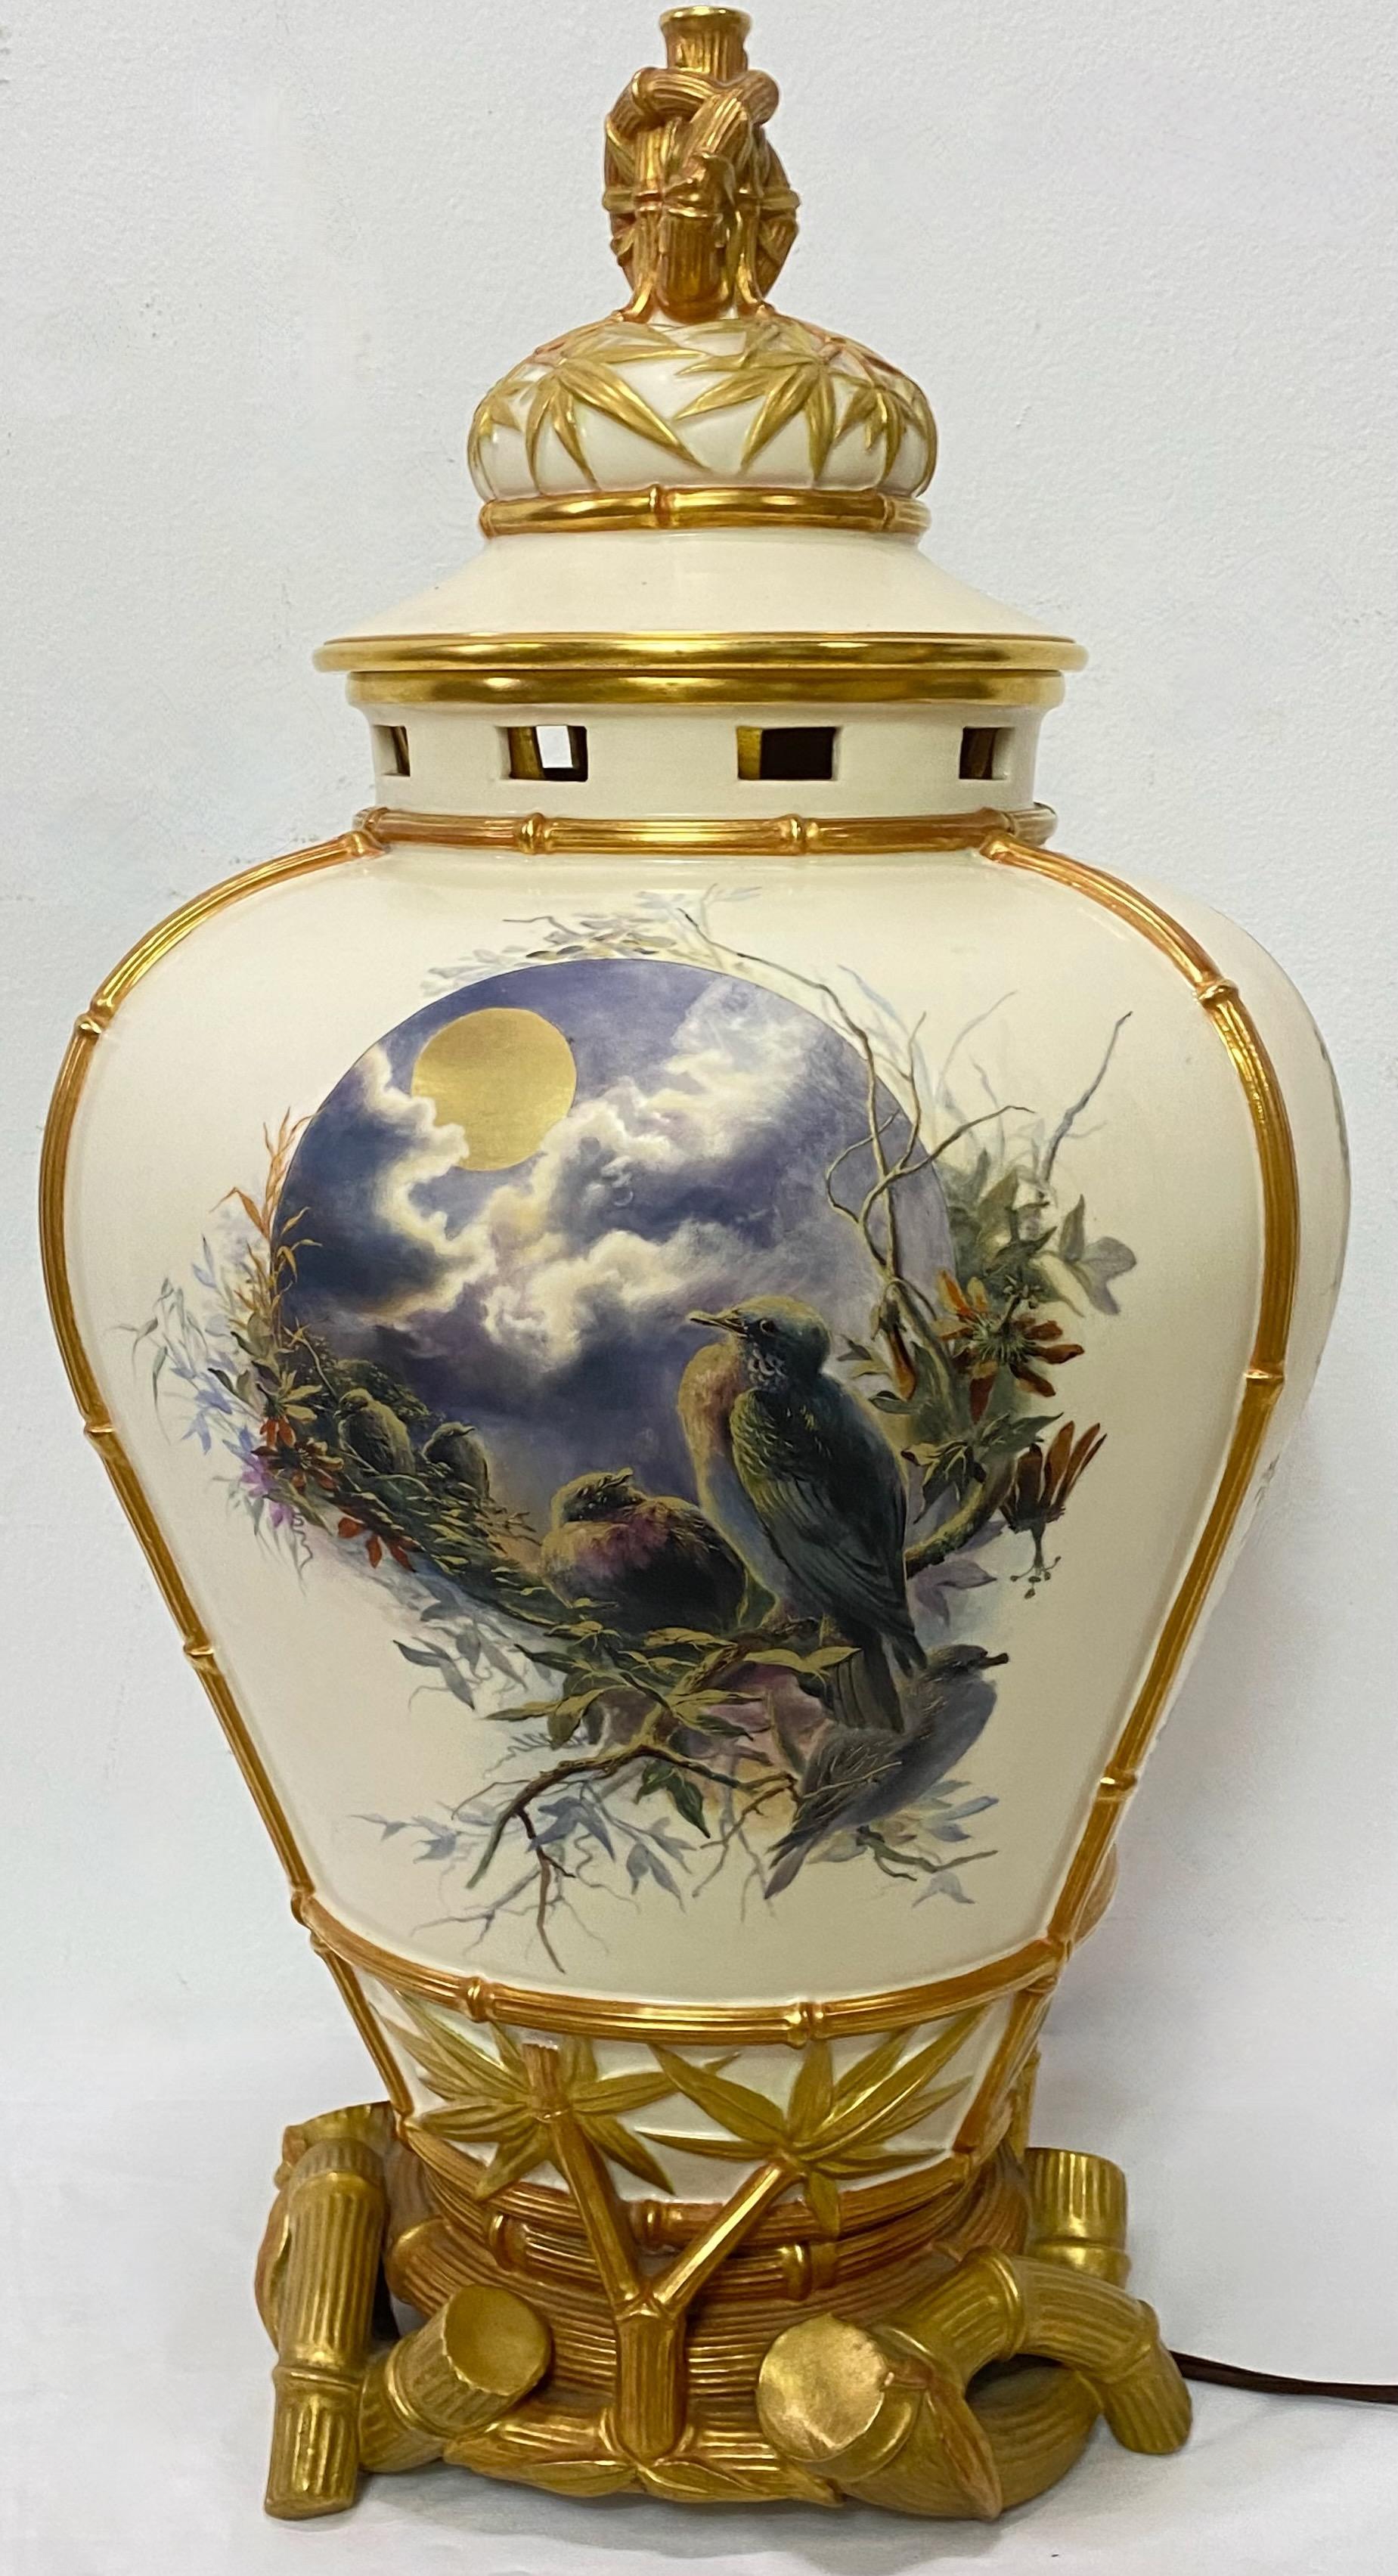 Un récipient inhabituel en forme d'urne, à grande échelle, en porcelaine anglaise Royal Worcester peinte à la main, maintenant électrifié. Finement peint et fabuleusement décoré d'oiseaux et de fleurs et de détails dorés.
Angleterre, fin du 19e